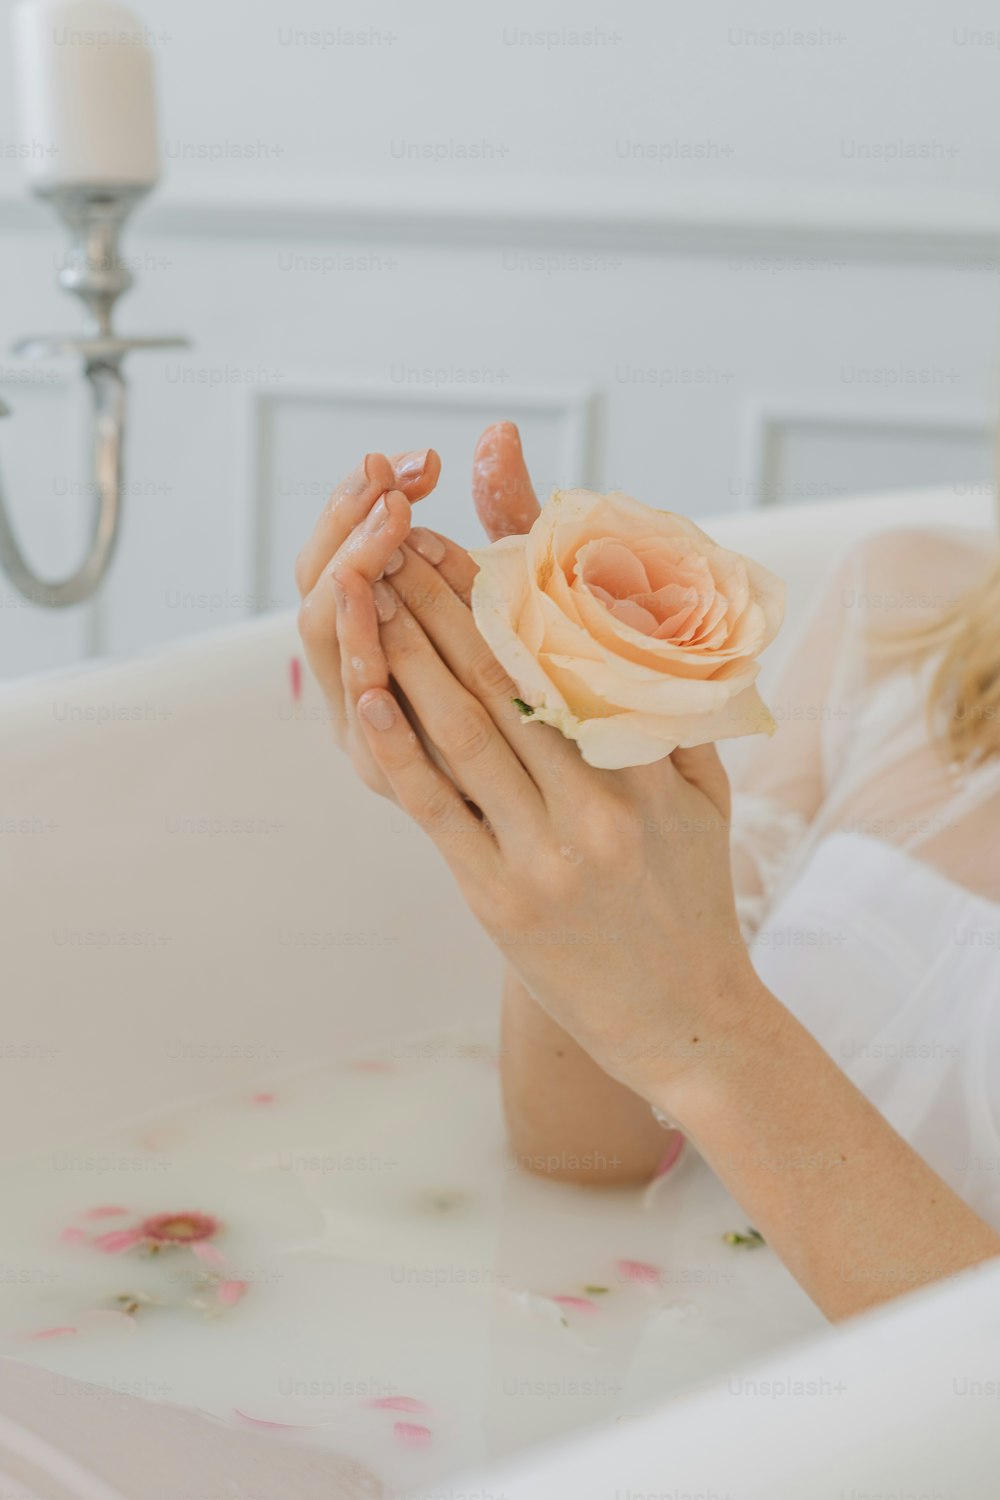 Una mujer sentada en una bañera sosteniendo una flor